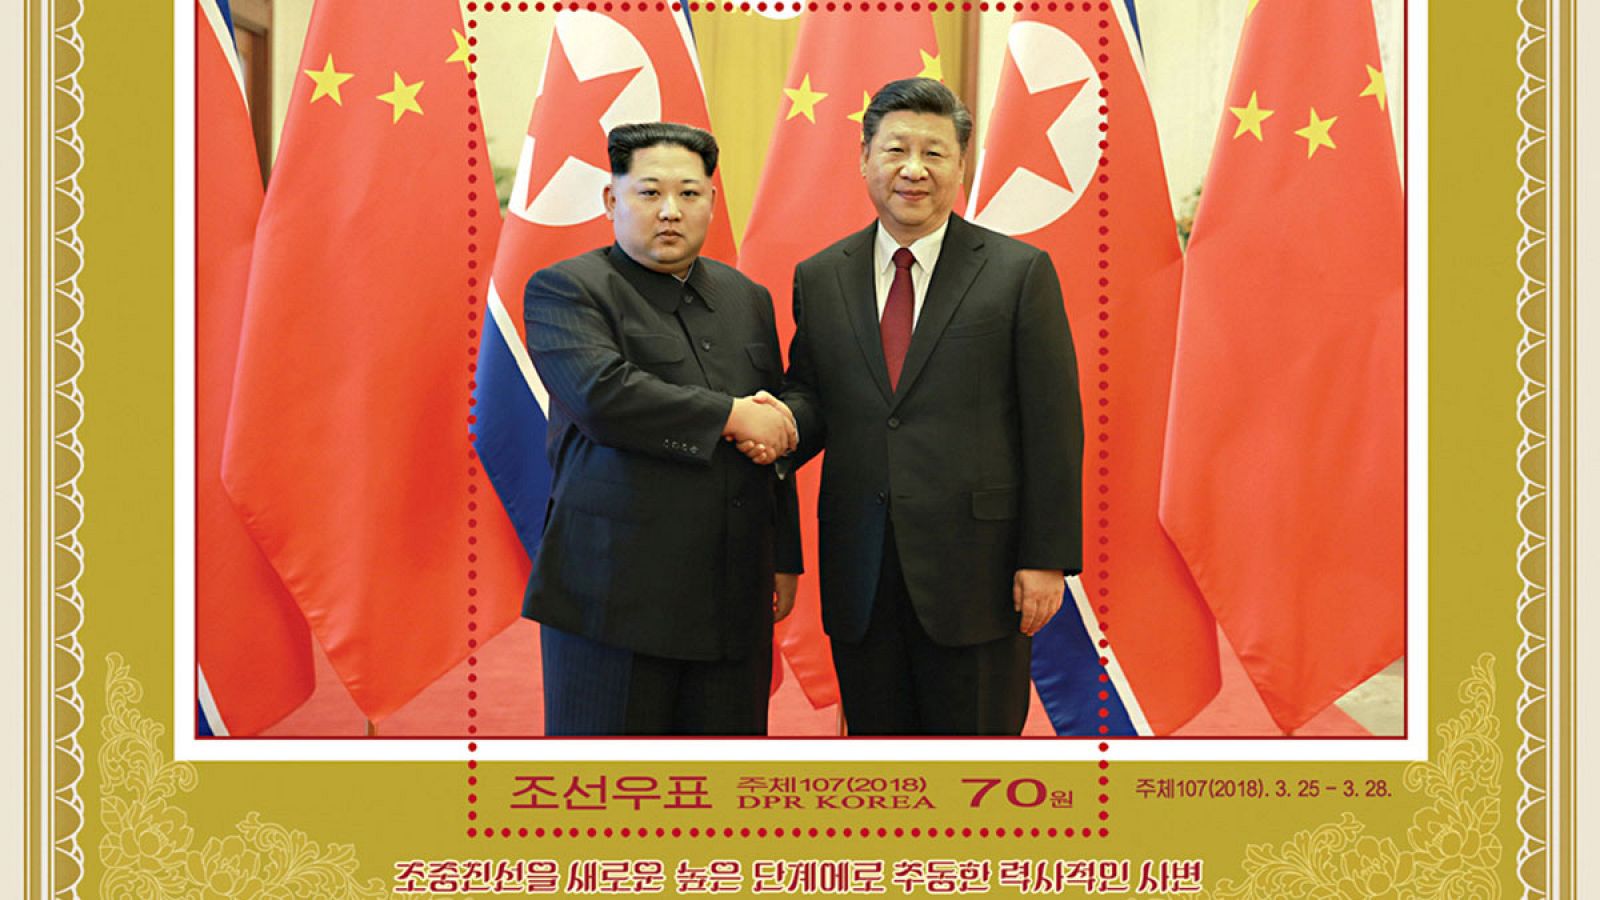 Sello emitido por el Servicio Estatal de Correos de Corea del Norte para conmemorar la visita a China de Kim Jong Un y la reunión con el presidente chino